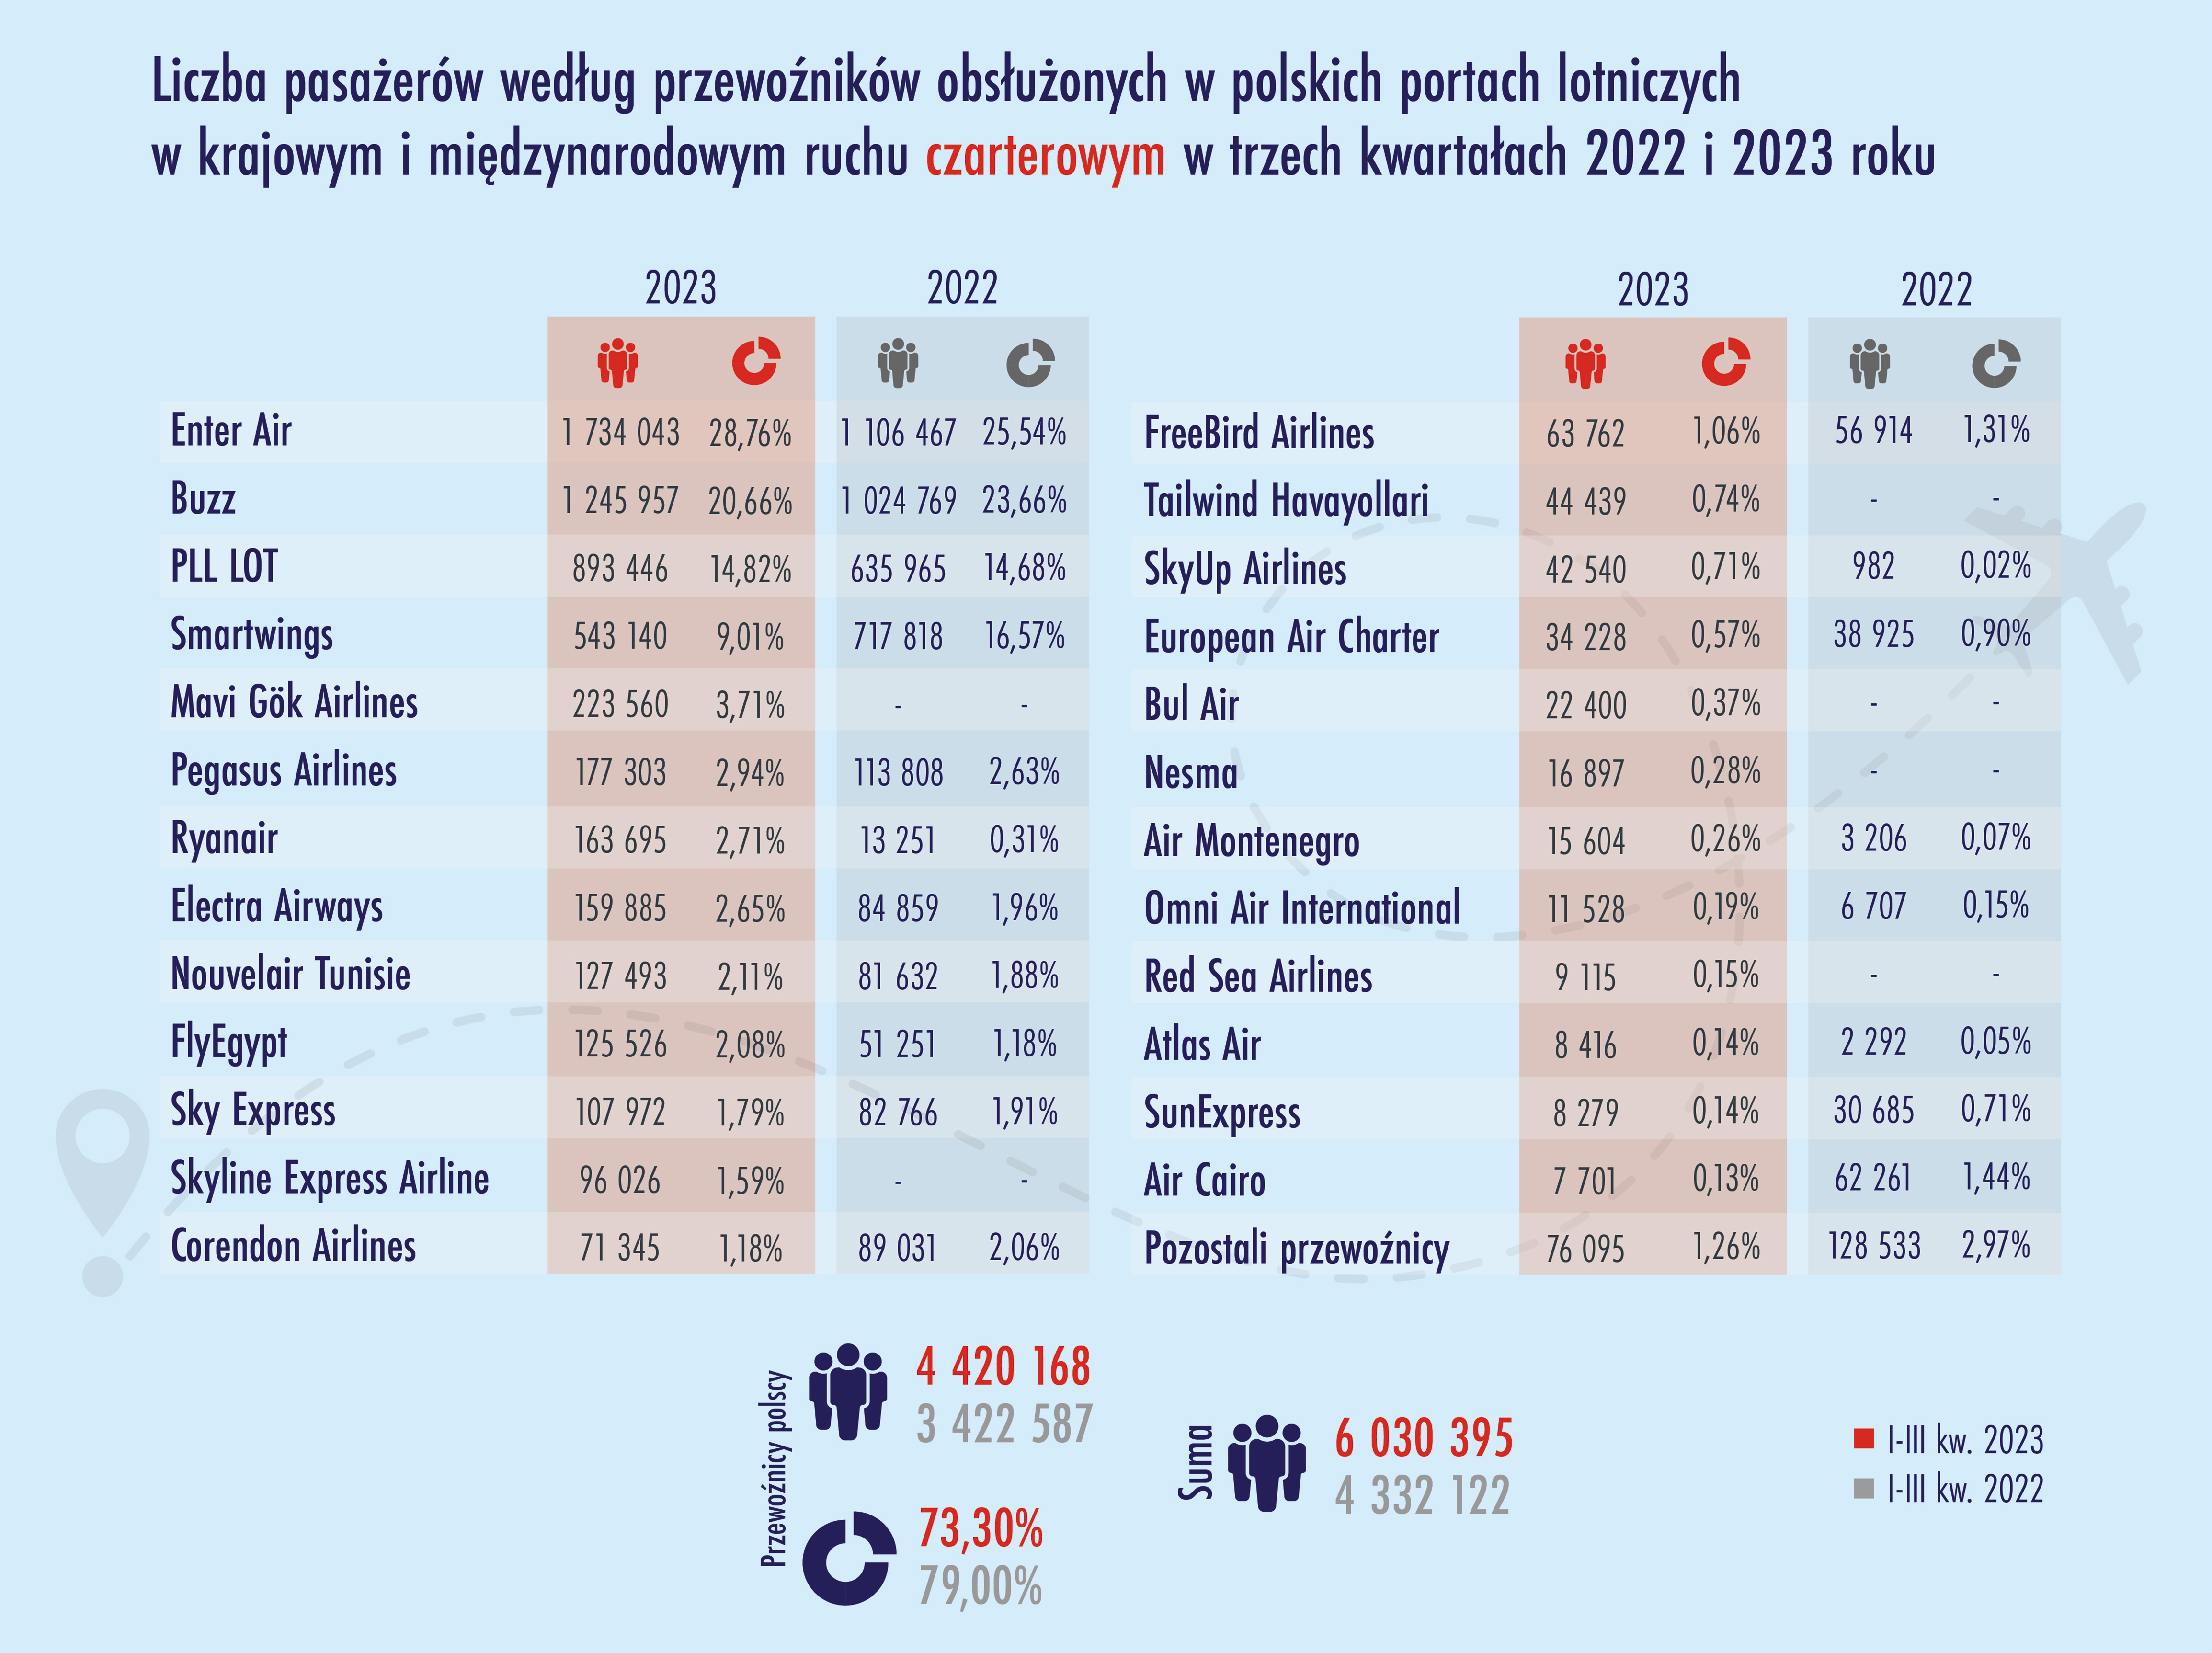 Liczba pasażerów obsłużonych w polskich portach lotniczych w ruchu czarterowym międzynarodowym i krajowym - według przewoźników